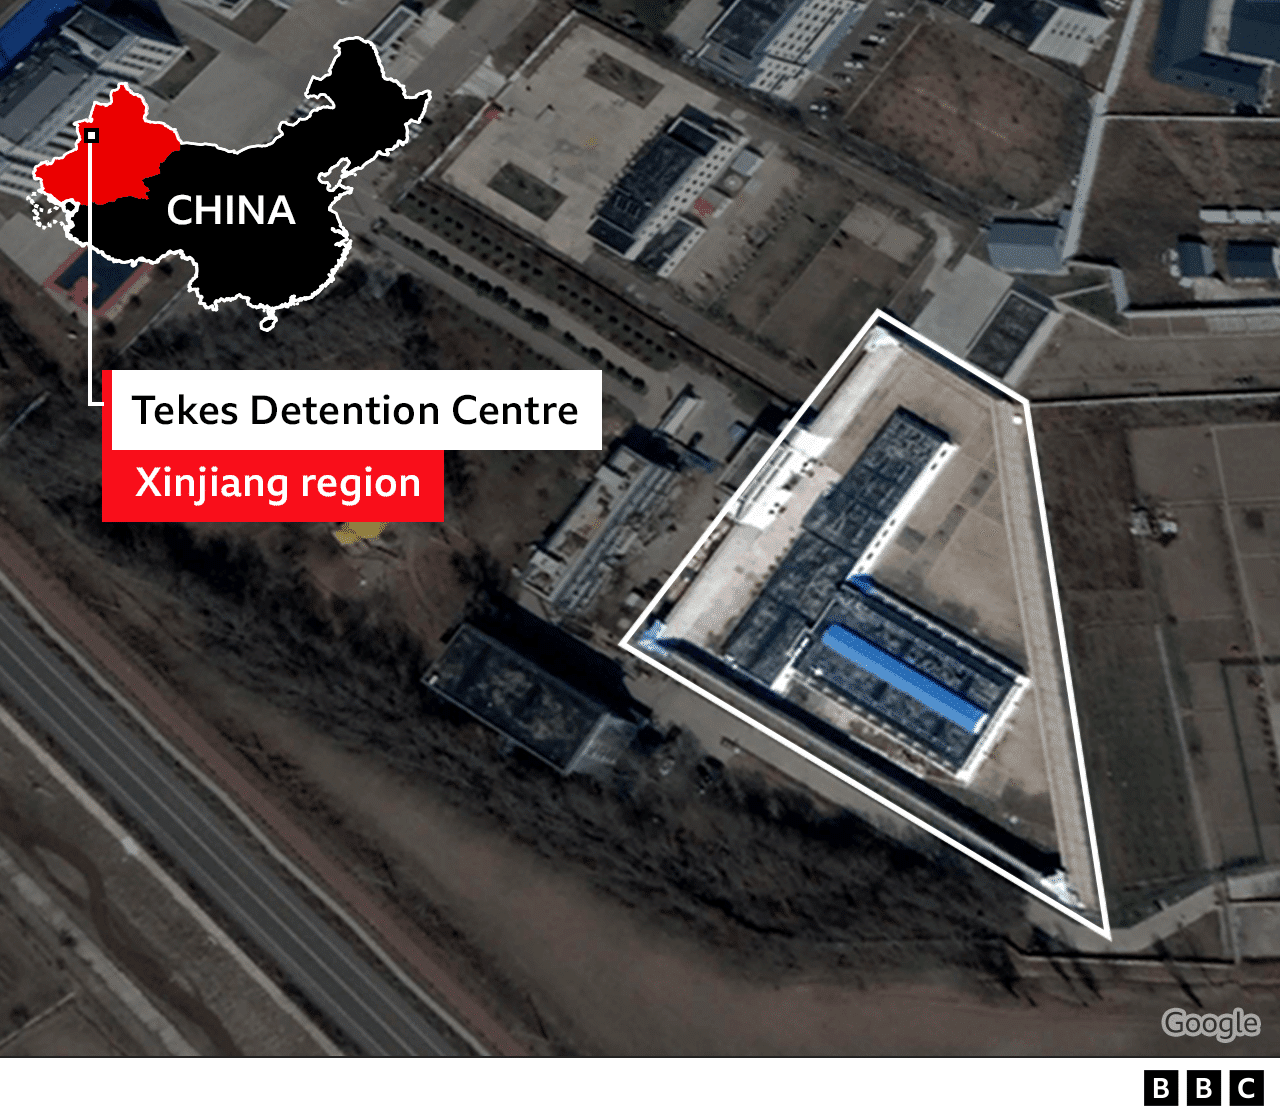 Map showing Tekes detention centre